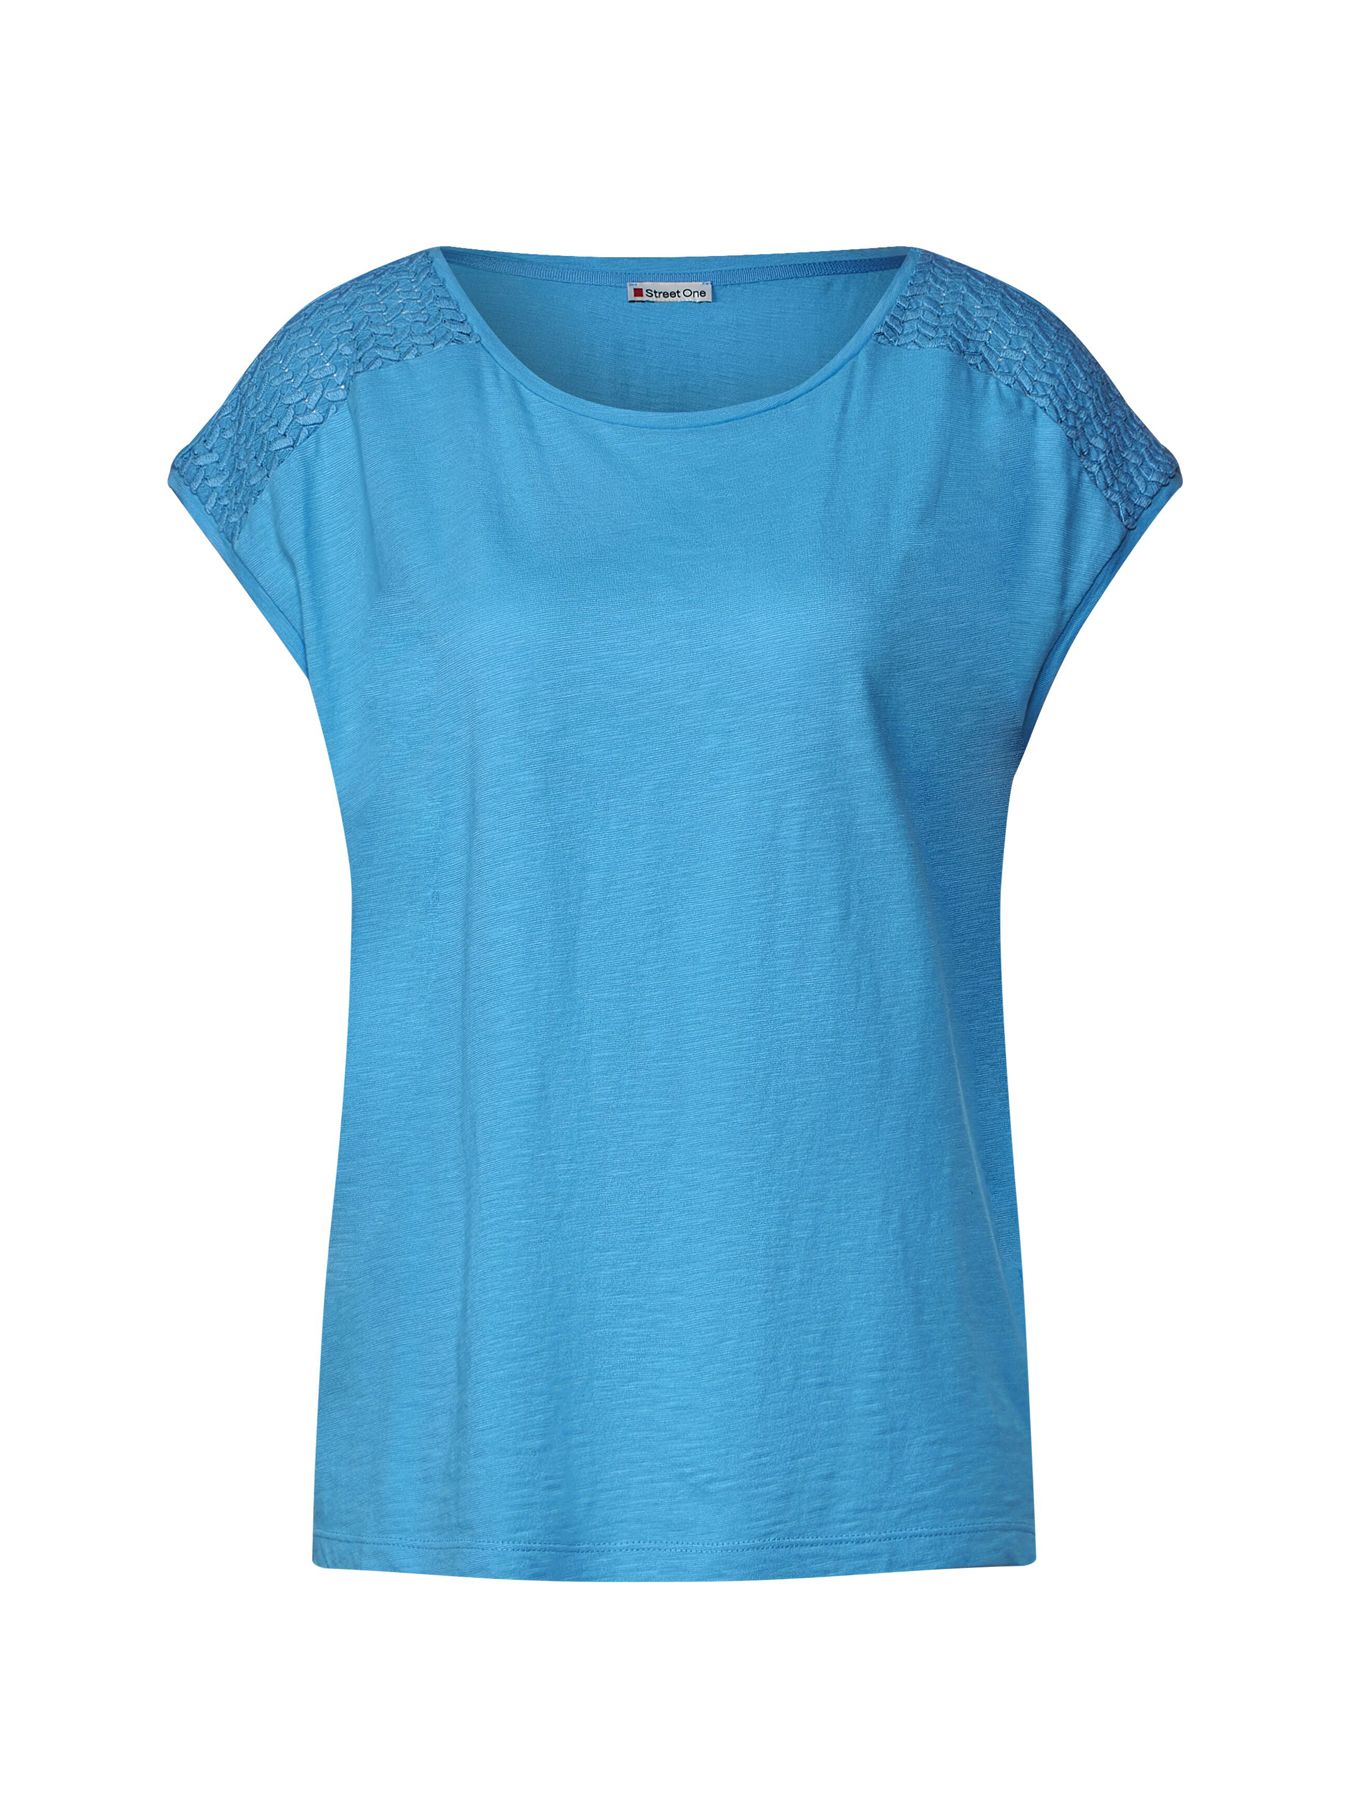 Street-One Qr shirt w.lace shoulder  Aqua 00104407-B0